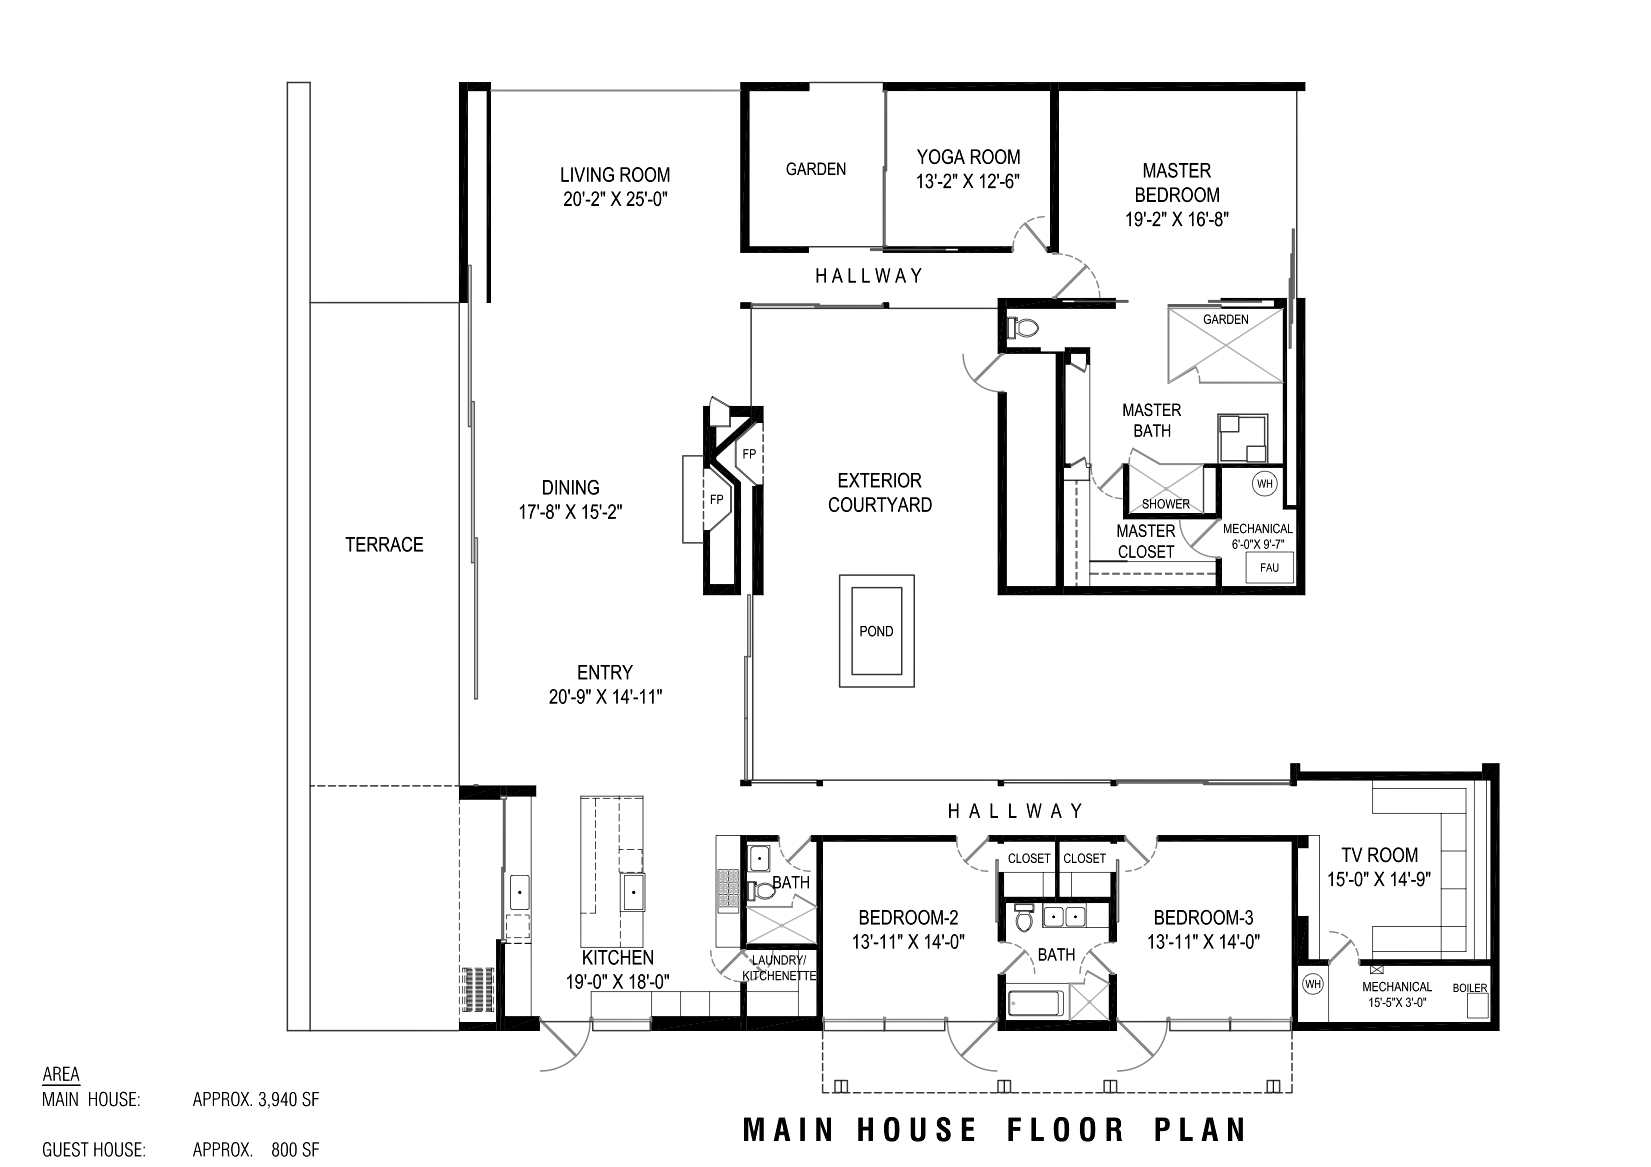 Main House Floor Plan - Toro Canyon House - 3660 Toro Canyon Park Rd, Montecito, CA, USA